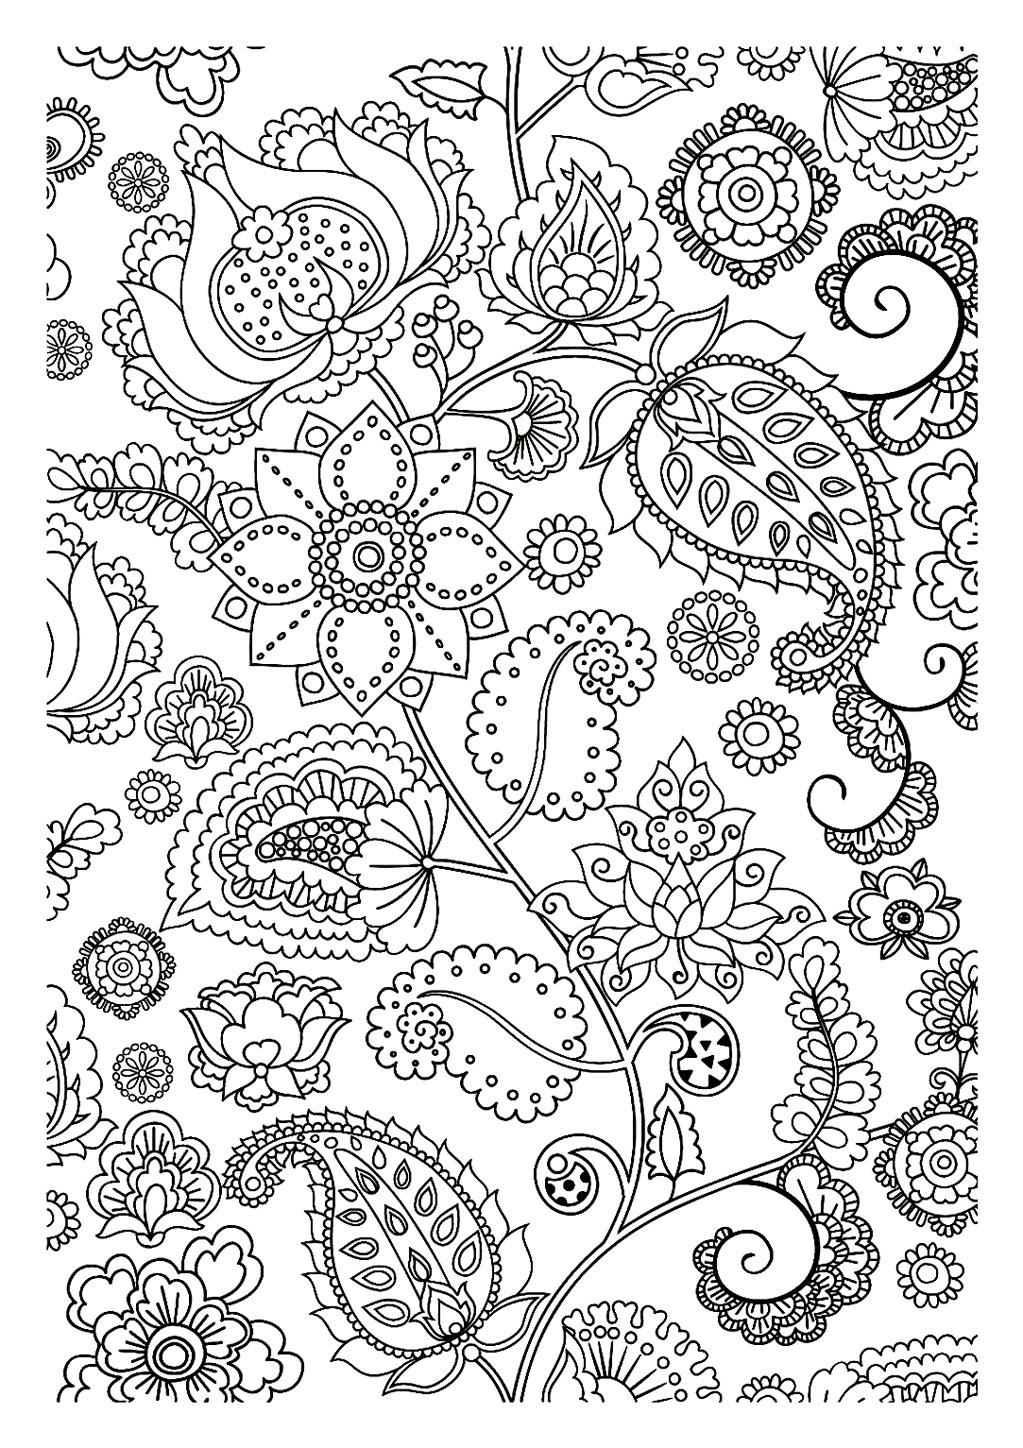 Página de coloração anti-stress perfeita com algumas flores e folhas